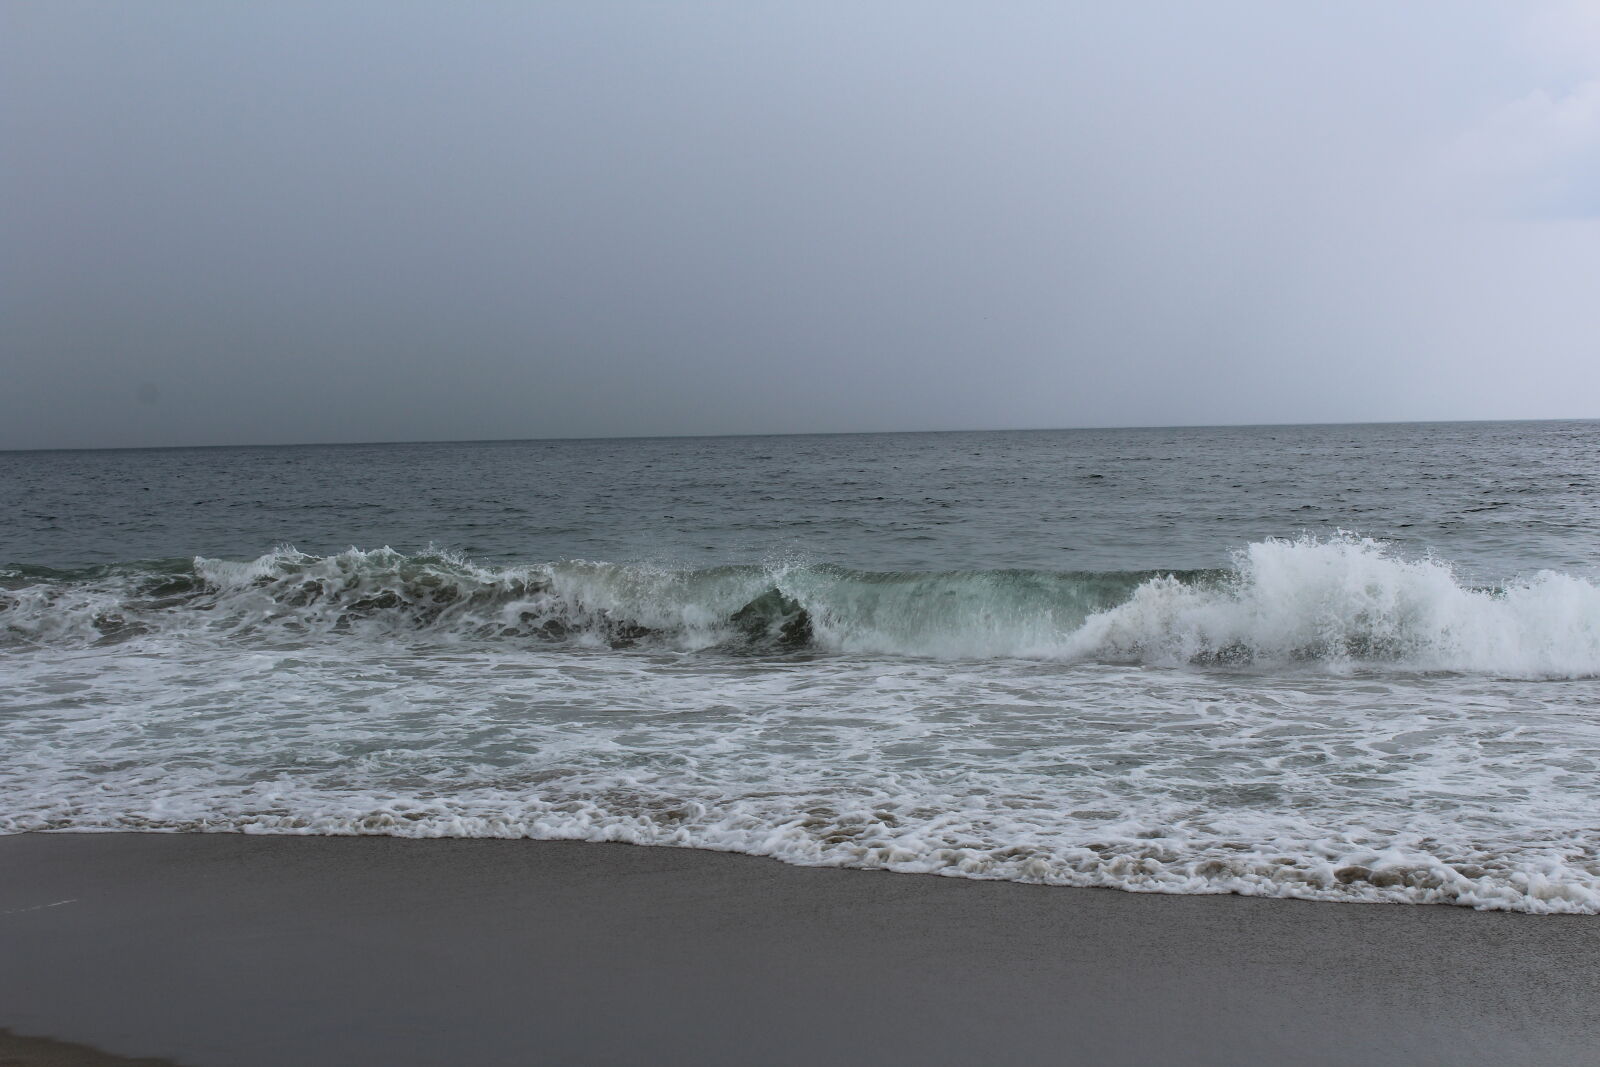 Canon EOS 1200D (EOS Rebel T5 / EOS Kiss X70 / EOS Hi) sample photo. Beach, hampton, beach, nh photography